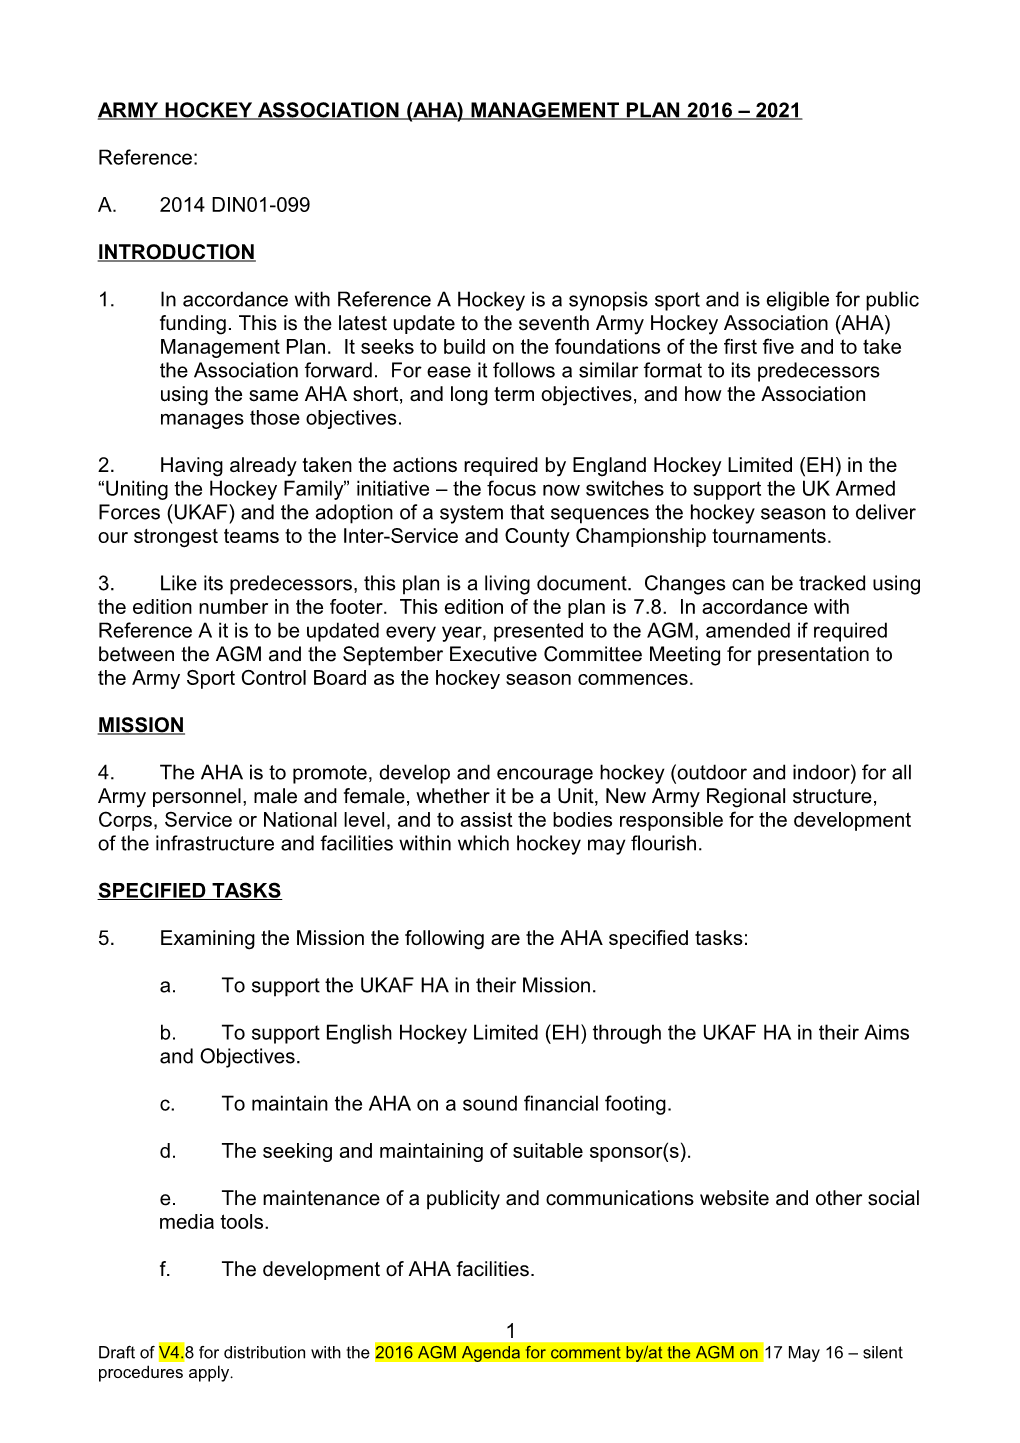 Army Hockey Association (Aha) Management Plan 2000 2005